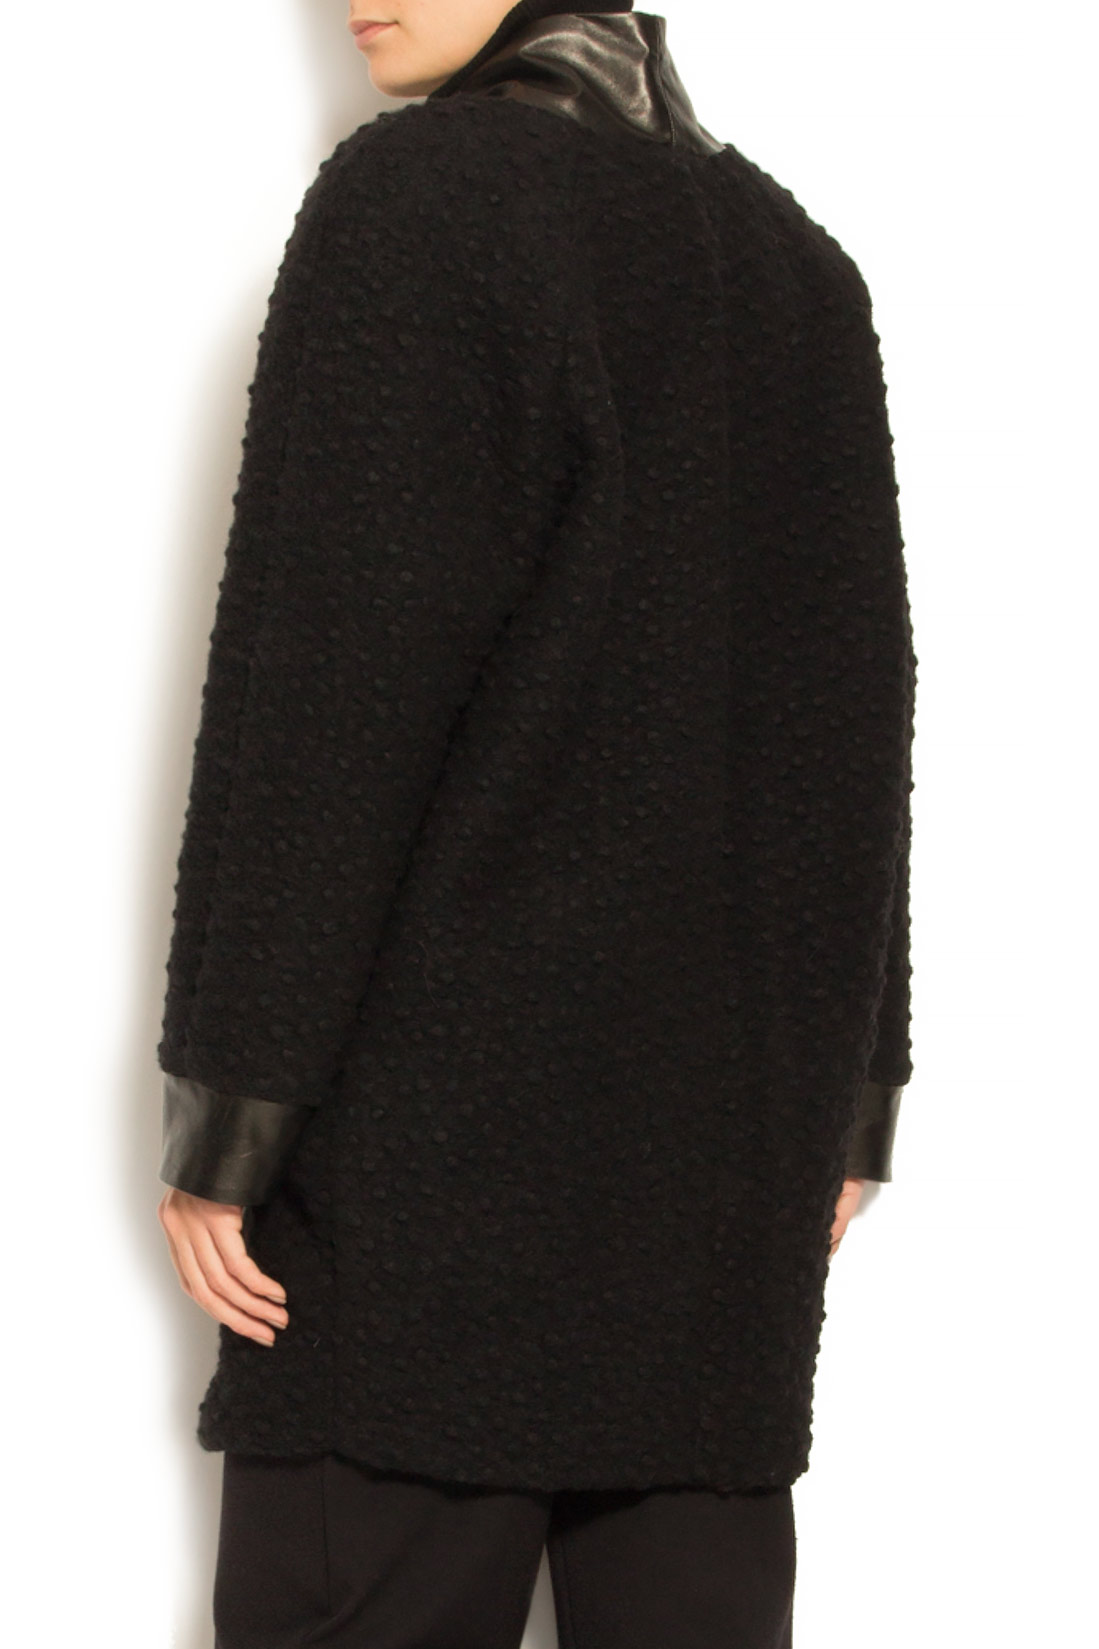 Palton din lana cu insertii din piele ecologica Elena Perseil imagine 2